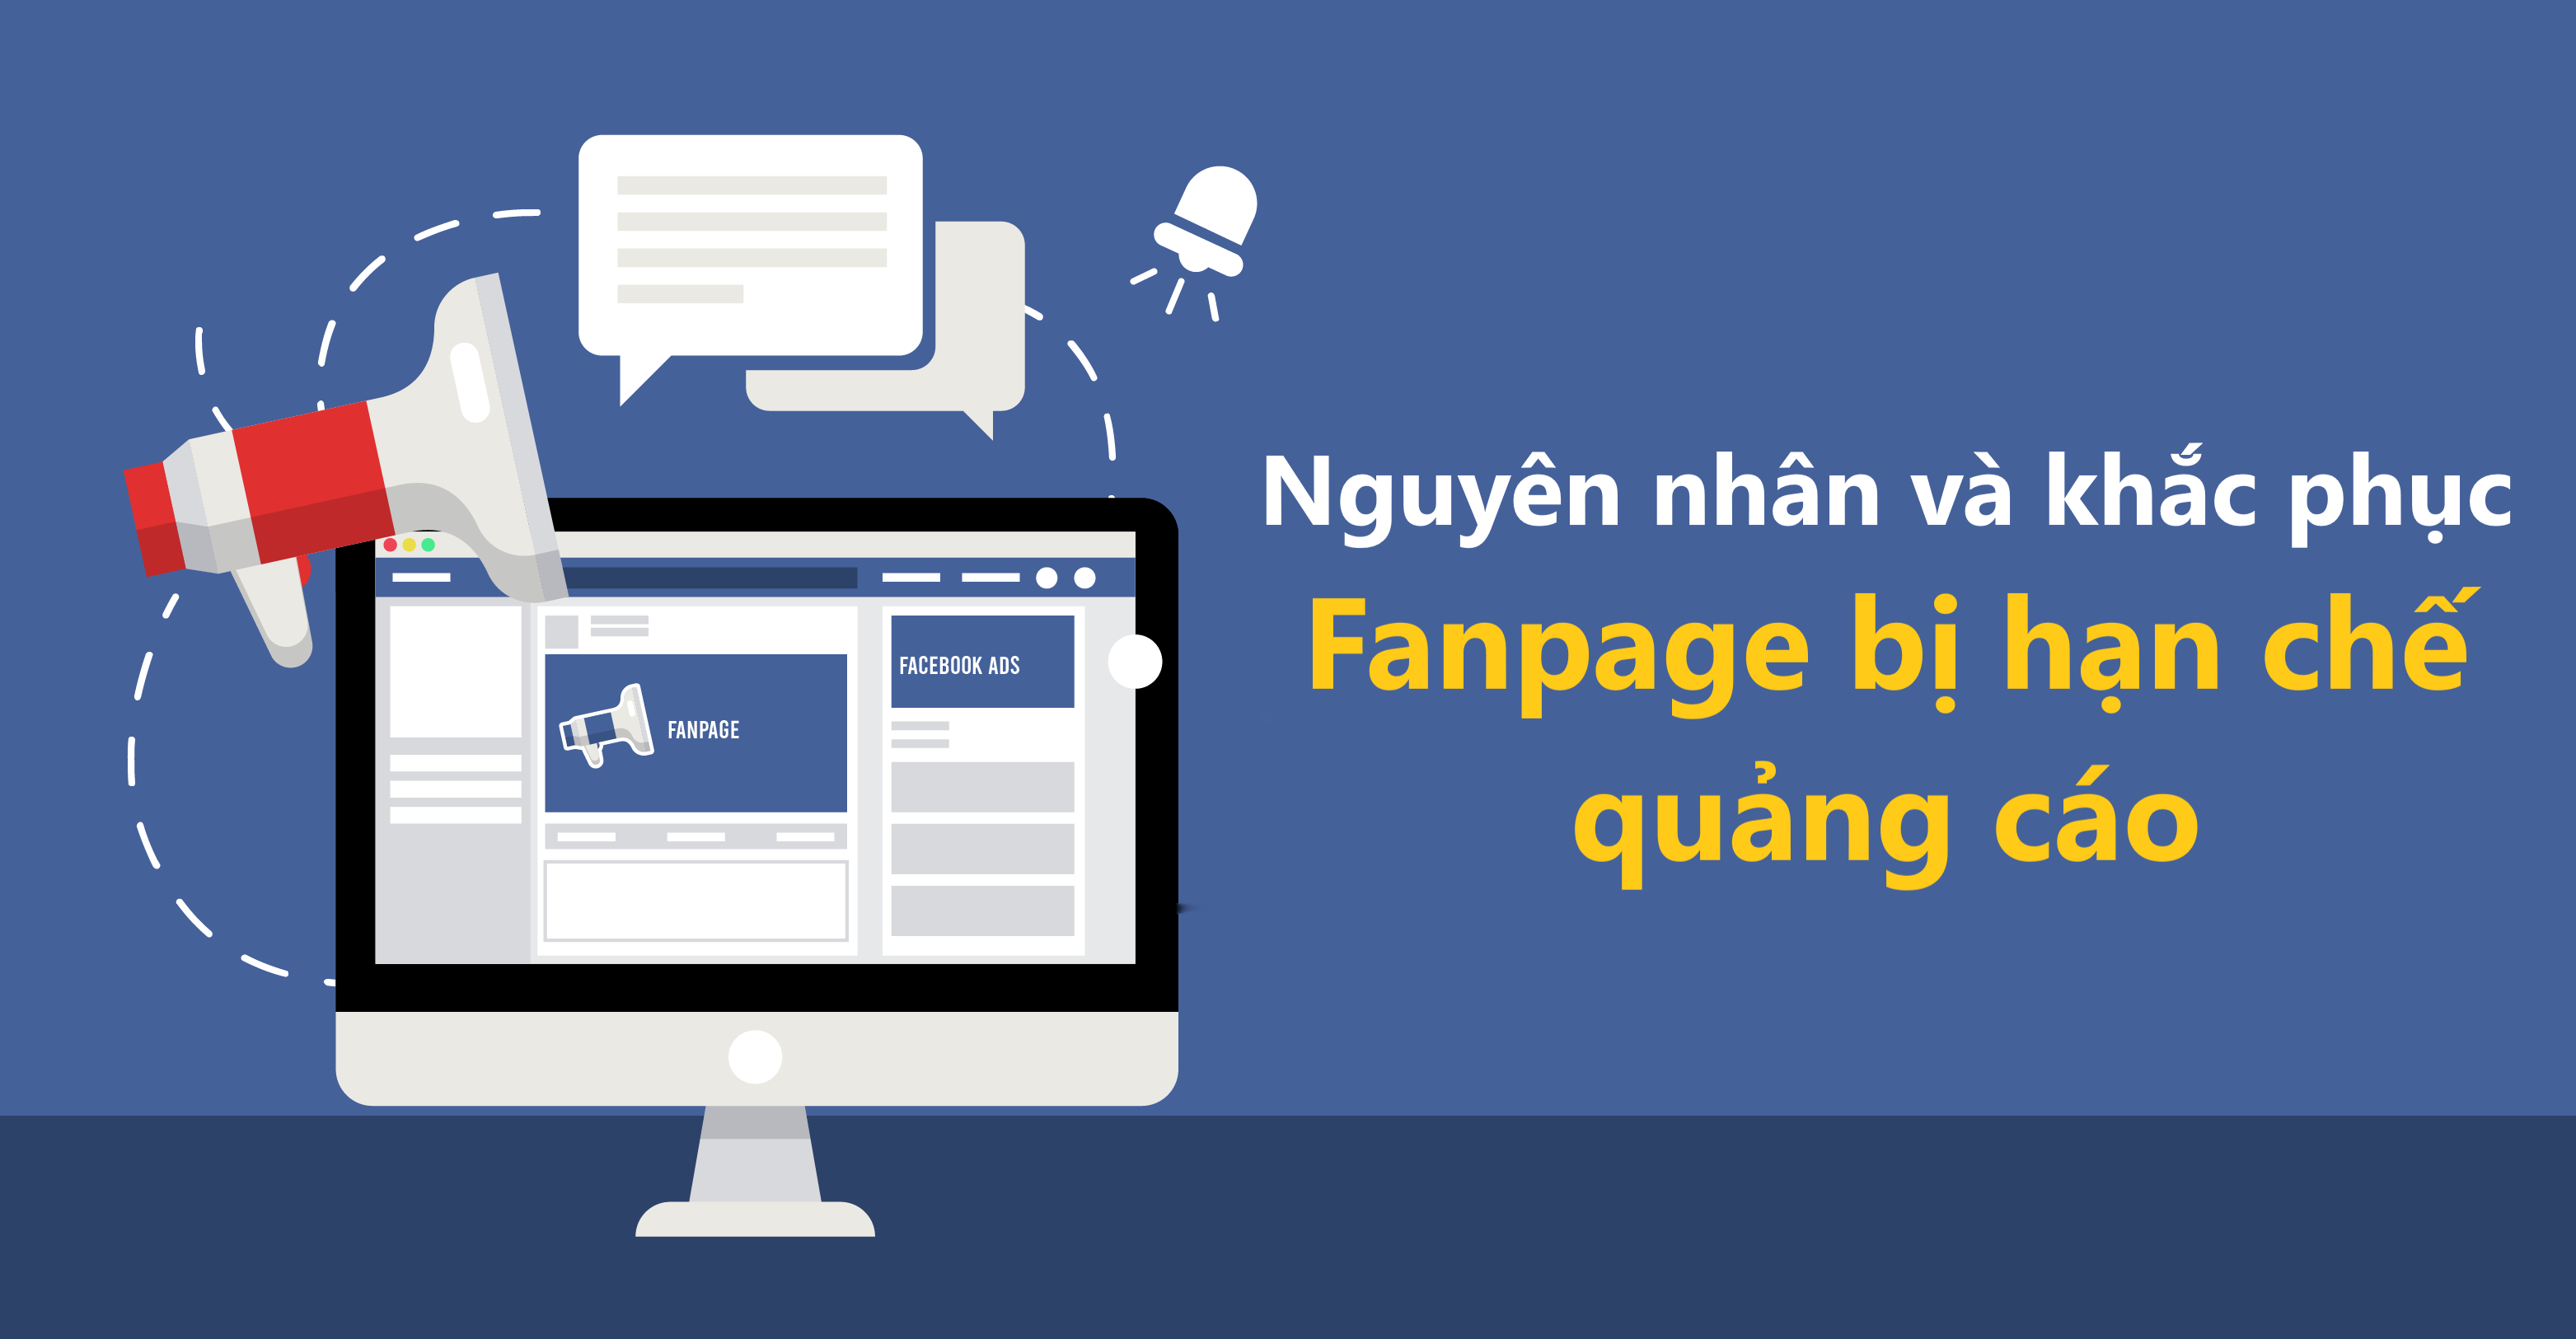 Cách khắc phục fanpage bị hạn chế quảng cáo trên Facebook